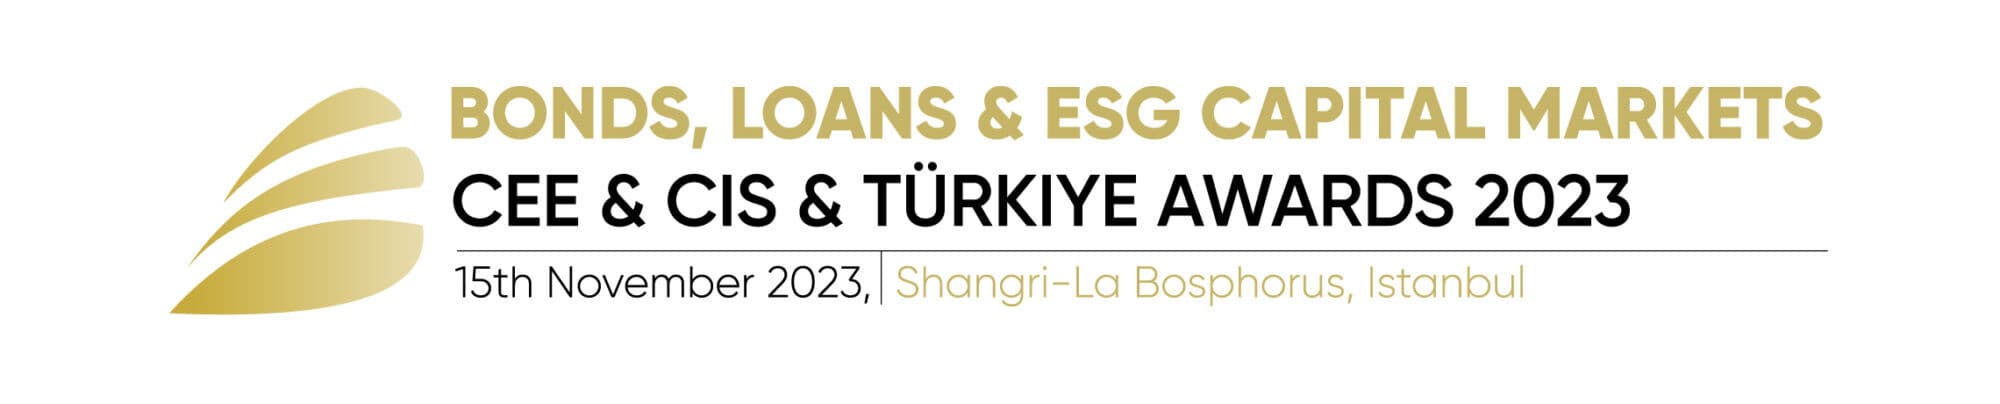 Bonds, Loans & ESG Capital Markets CEE, CIS & Türkiye Awards 2023